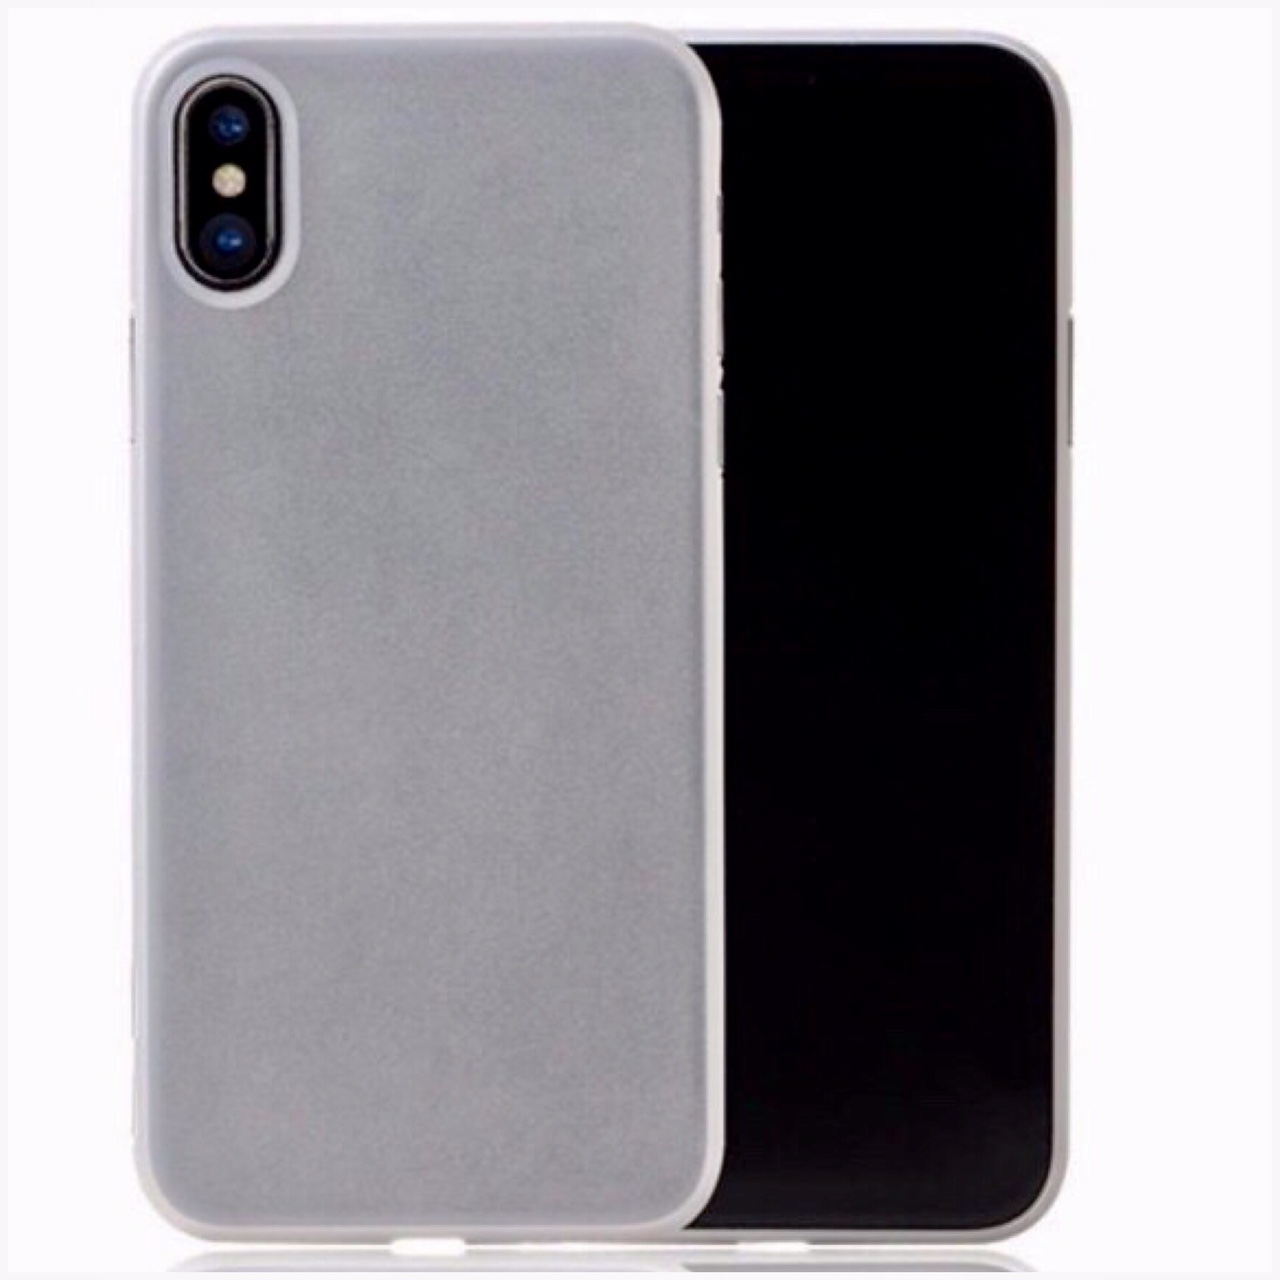 Ốp Lưng Dành Cho iPhone X hiệu Memumi siêu mỏng 0.3 mm (trắng) - Hàng Nhập Khẩu